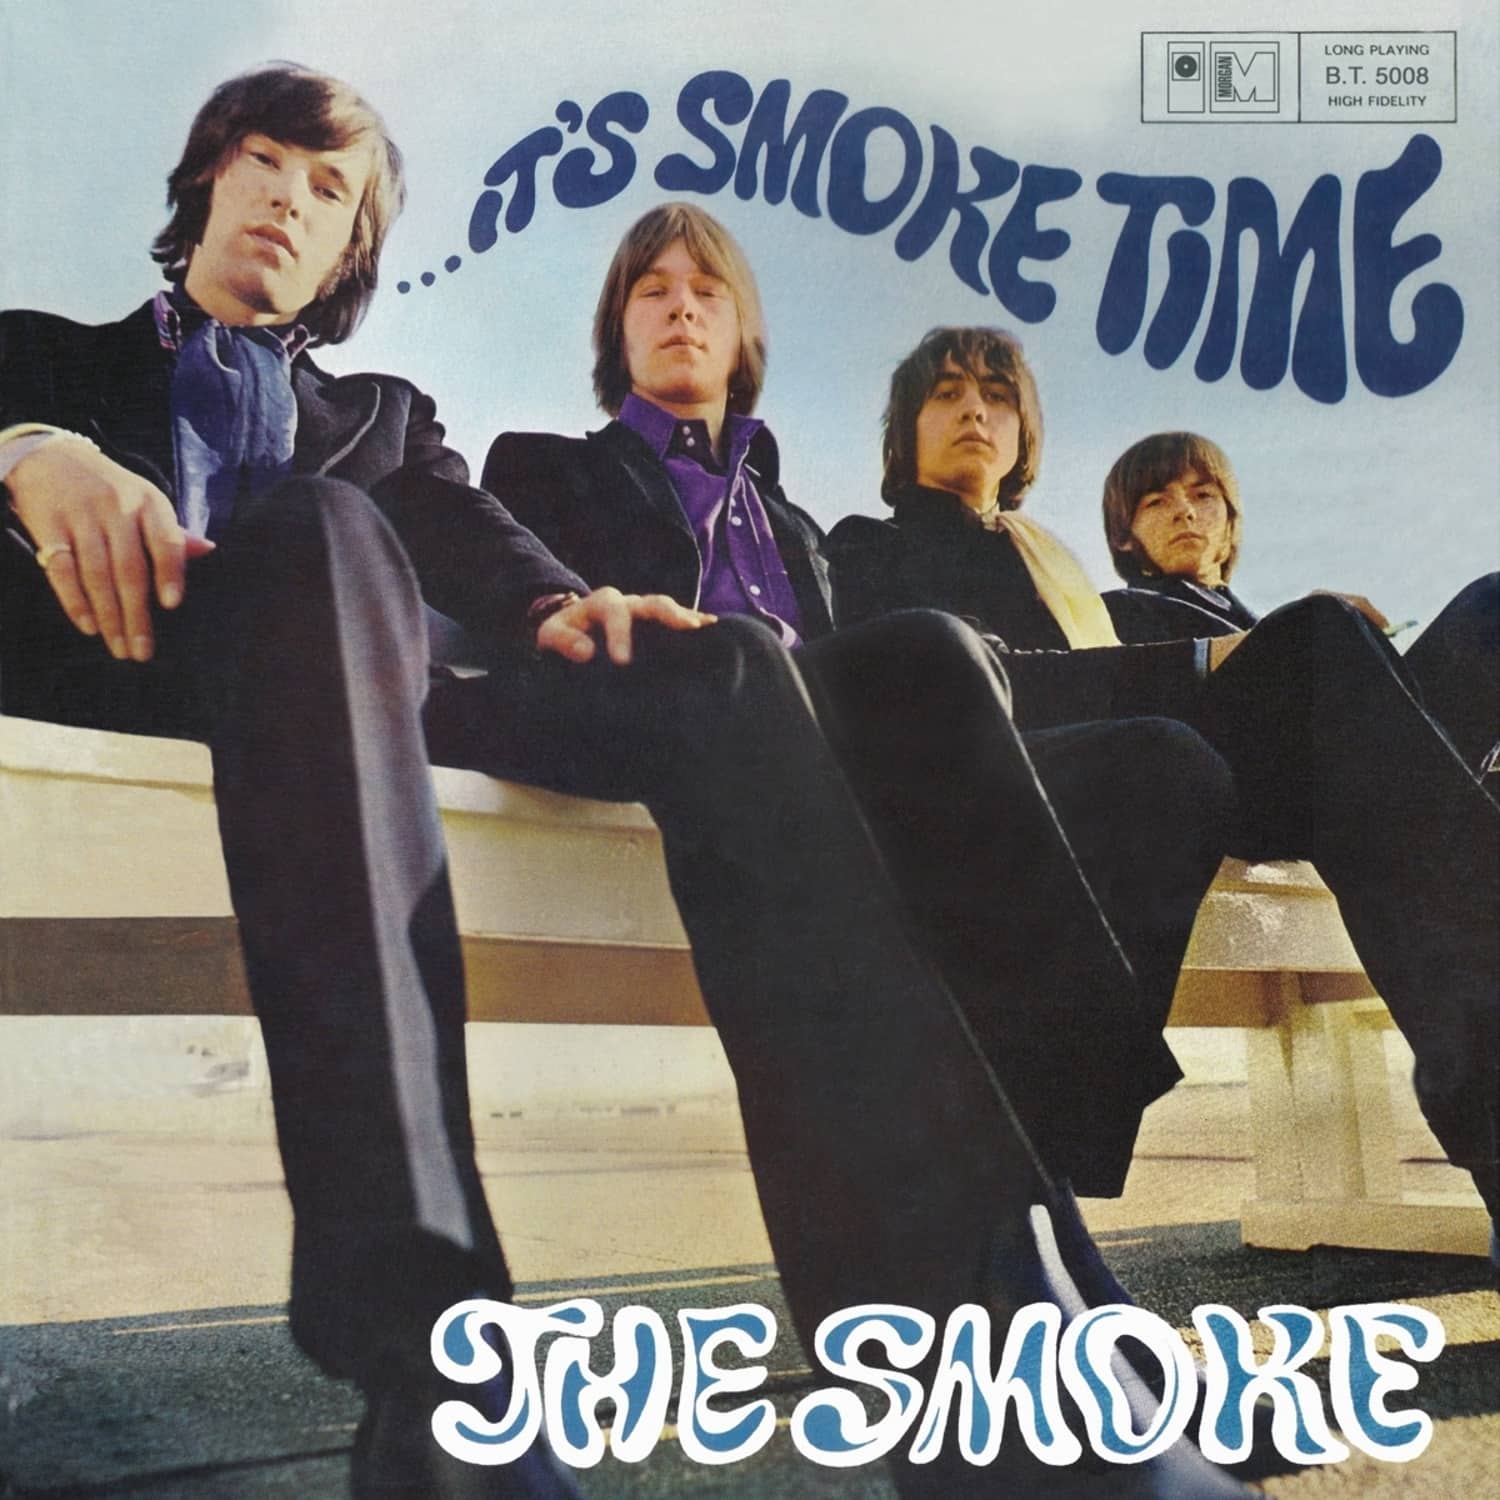 Smoke - IT S SMOKE TIME 